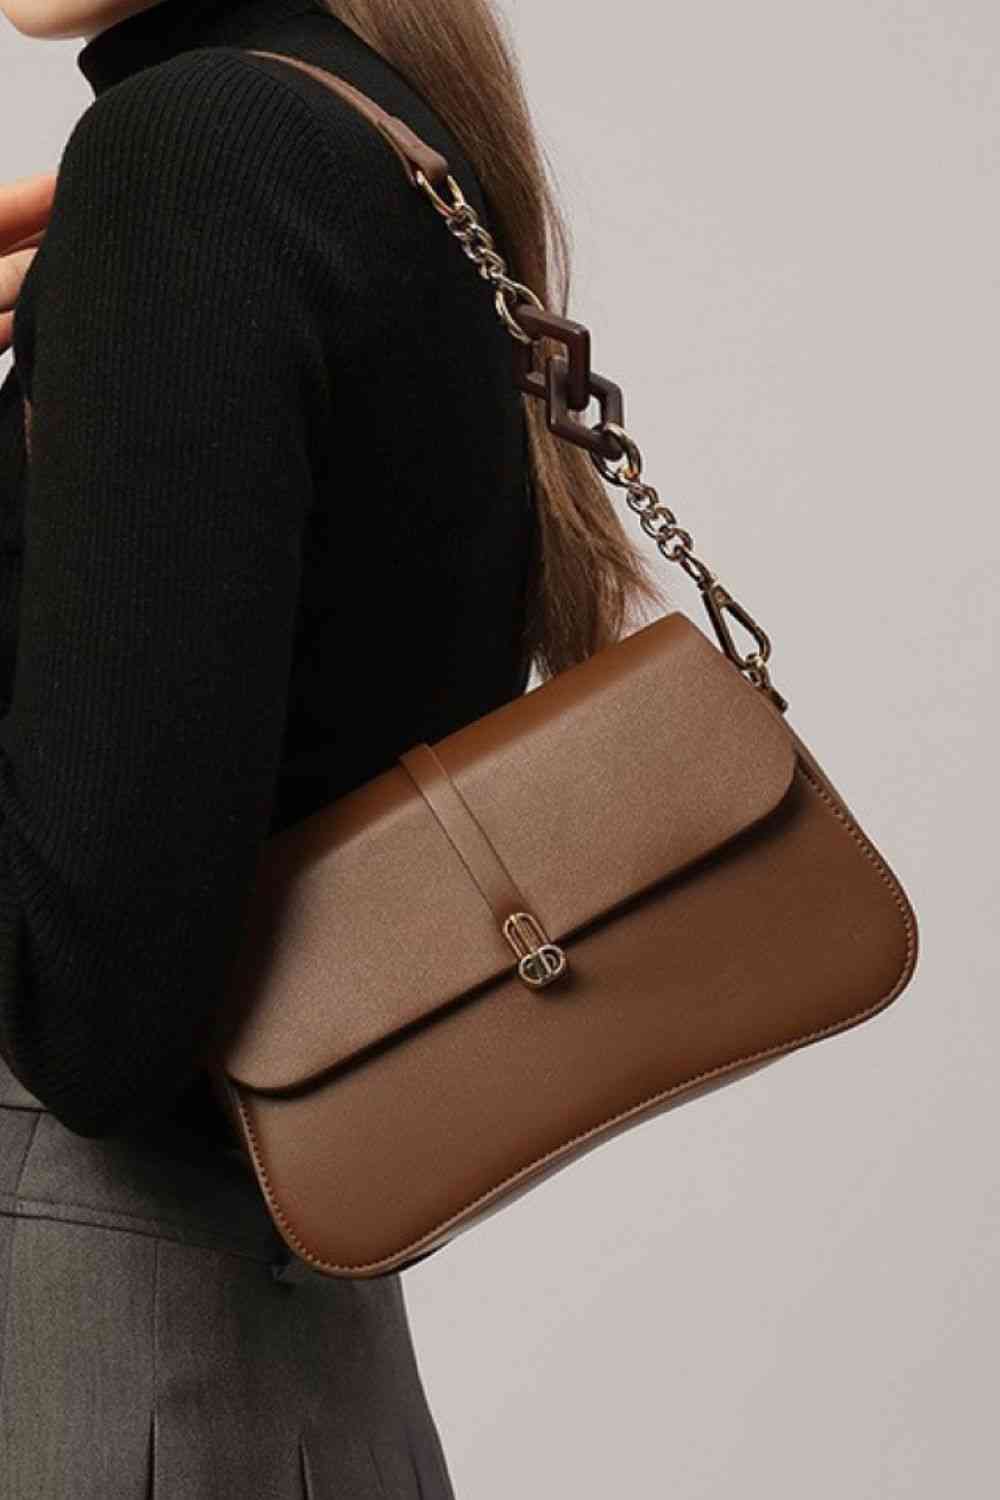 Adored PU Leather Shoulder Bag - Handbag - FITGGINS